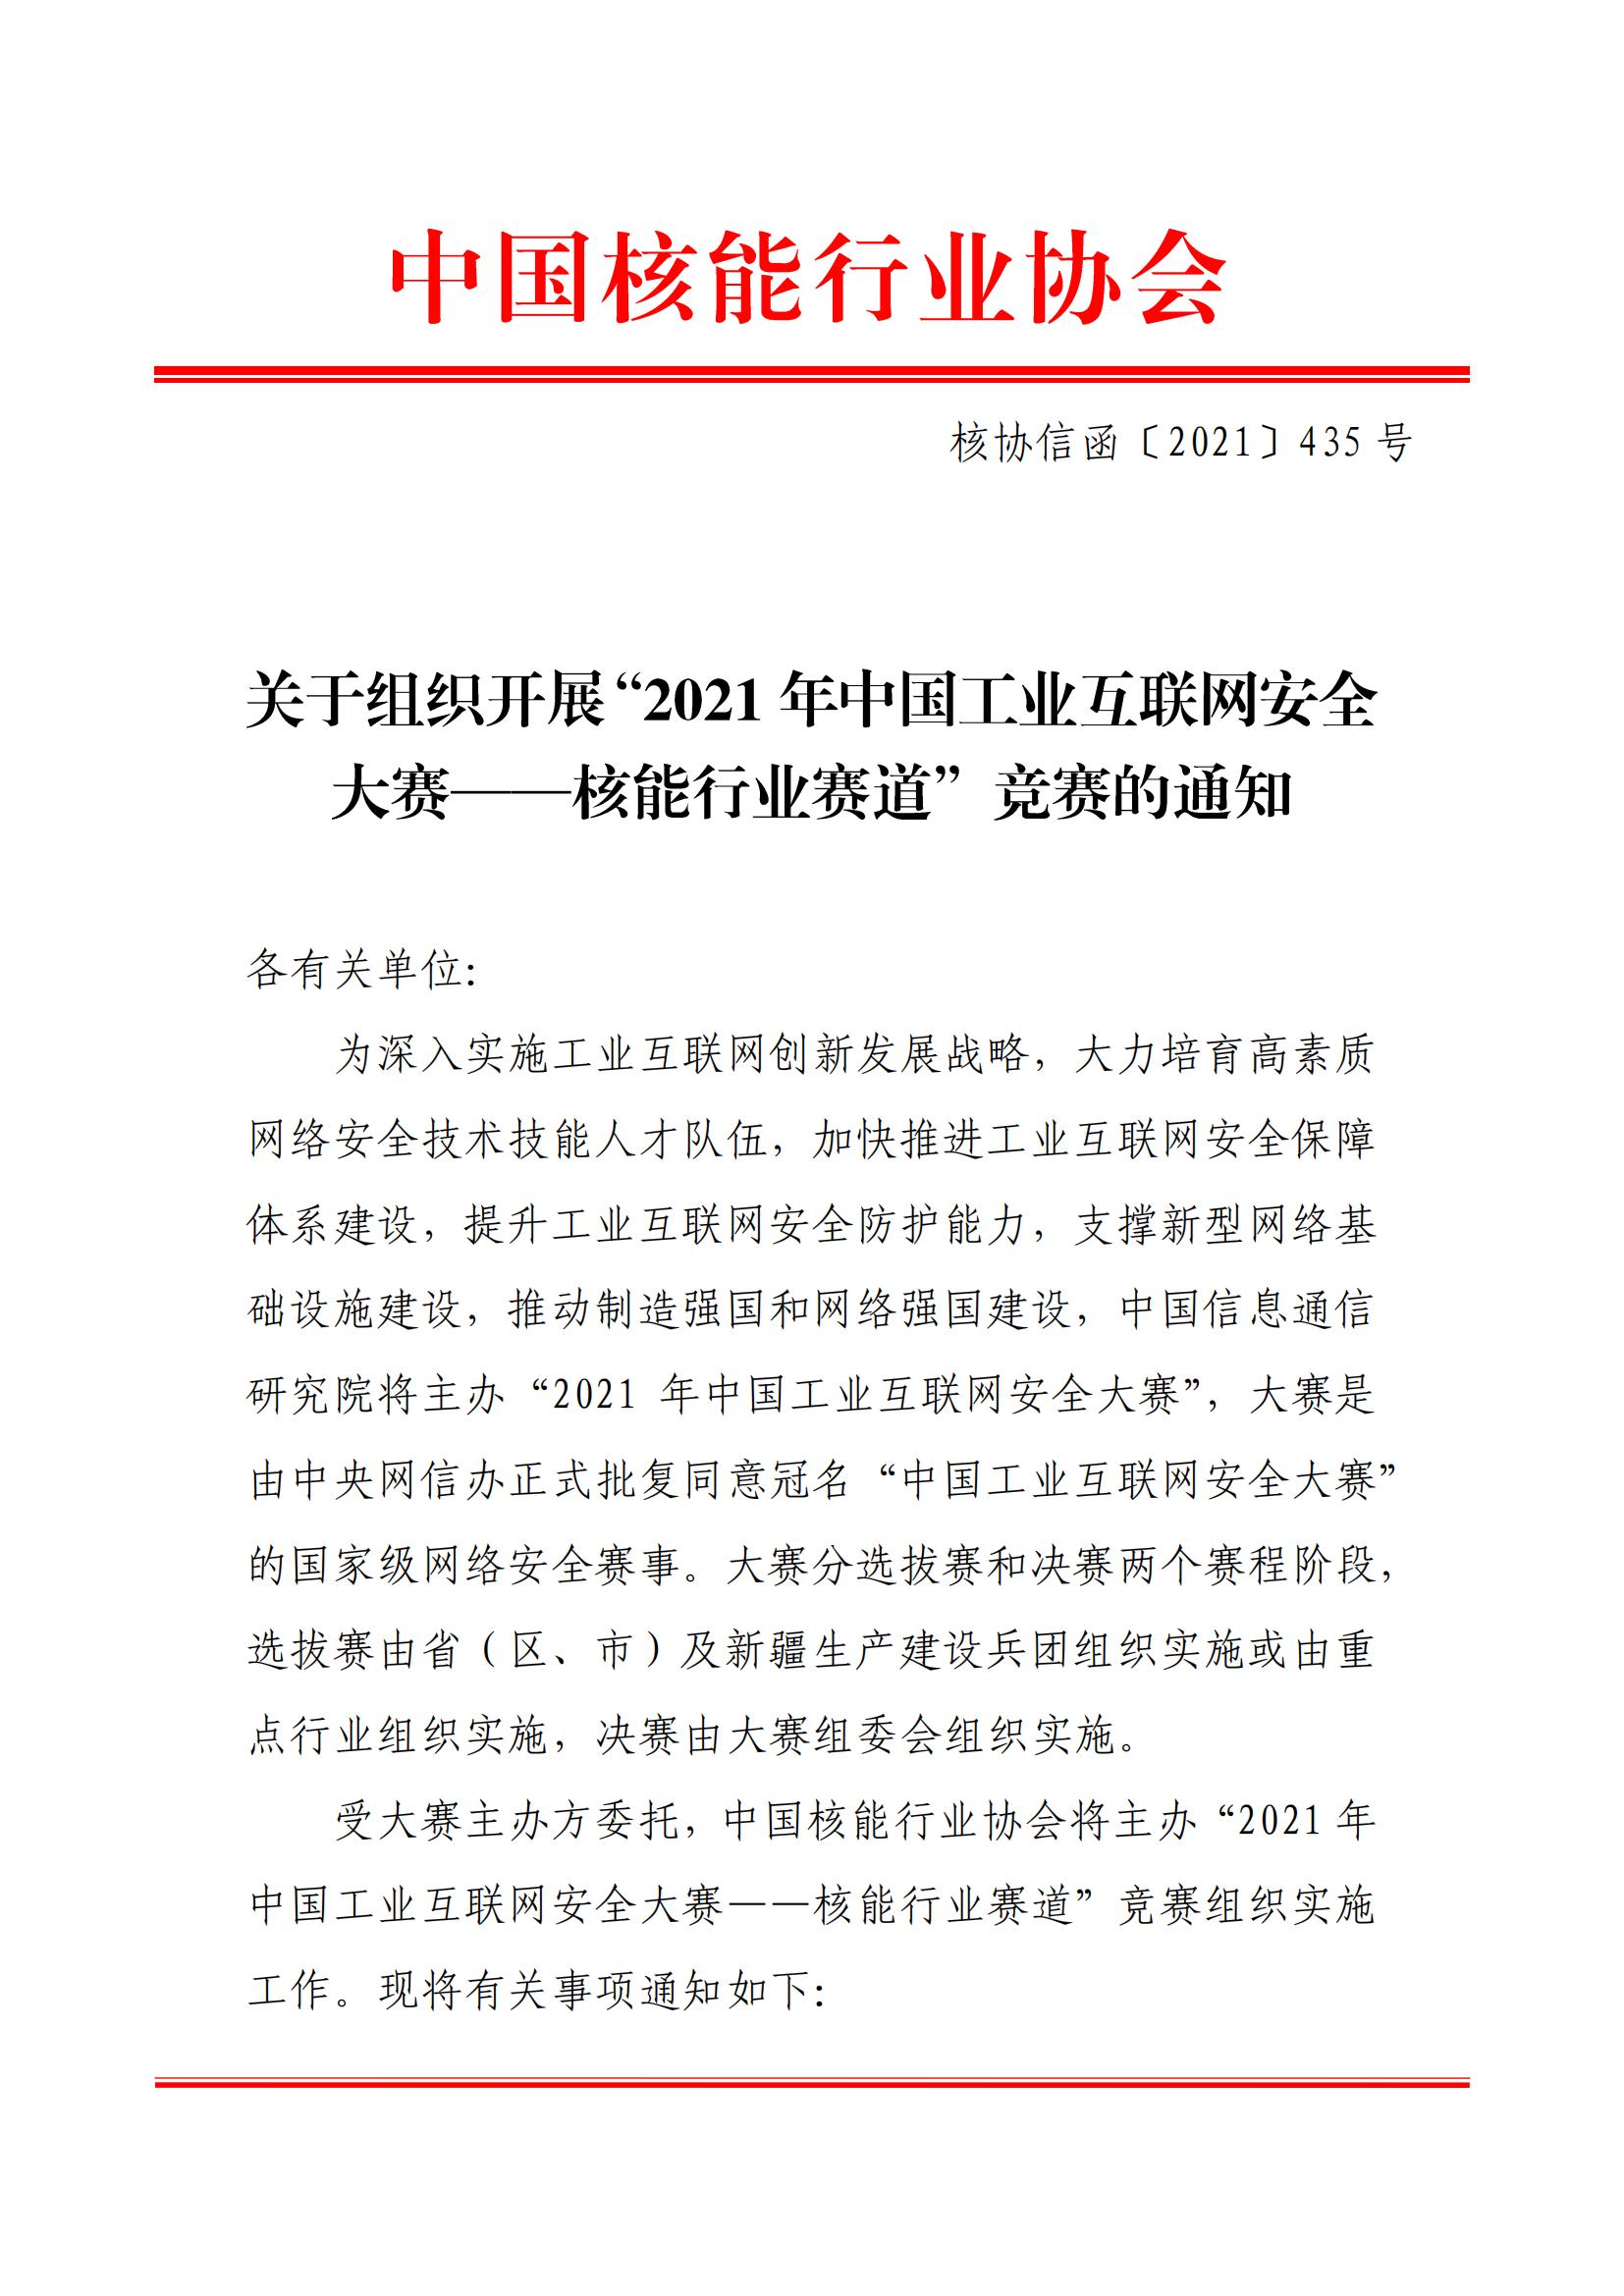 核协信函〔2021〕435号关于组织开展2021年“中国工业互联网安全大赛——核能行业赛道”竞赛的通知_00.jpg